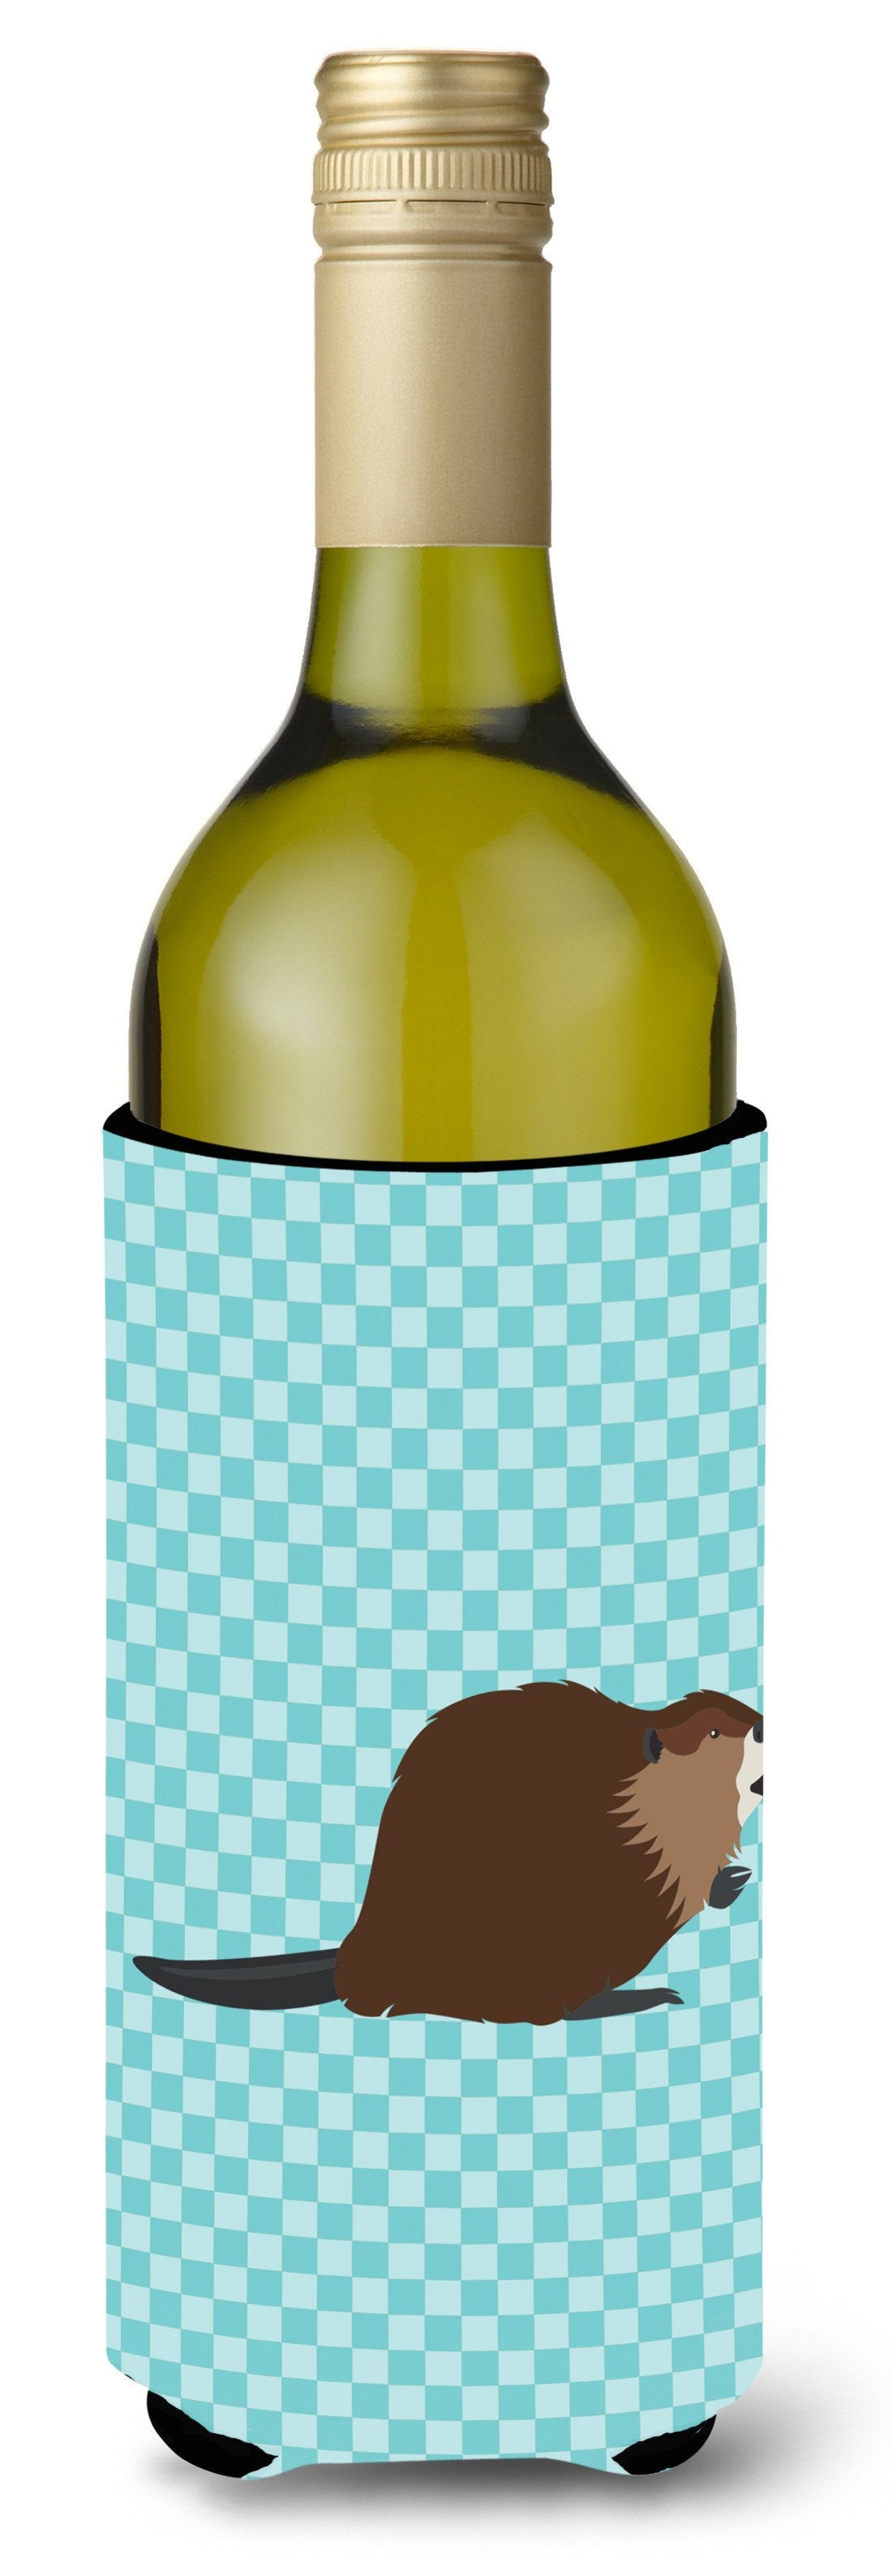 Eurasian Beaver Blue Check Wine Bottle Beverge Insulator Hugger BB8047LITERK by Caroline's Treasures